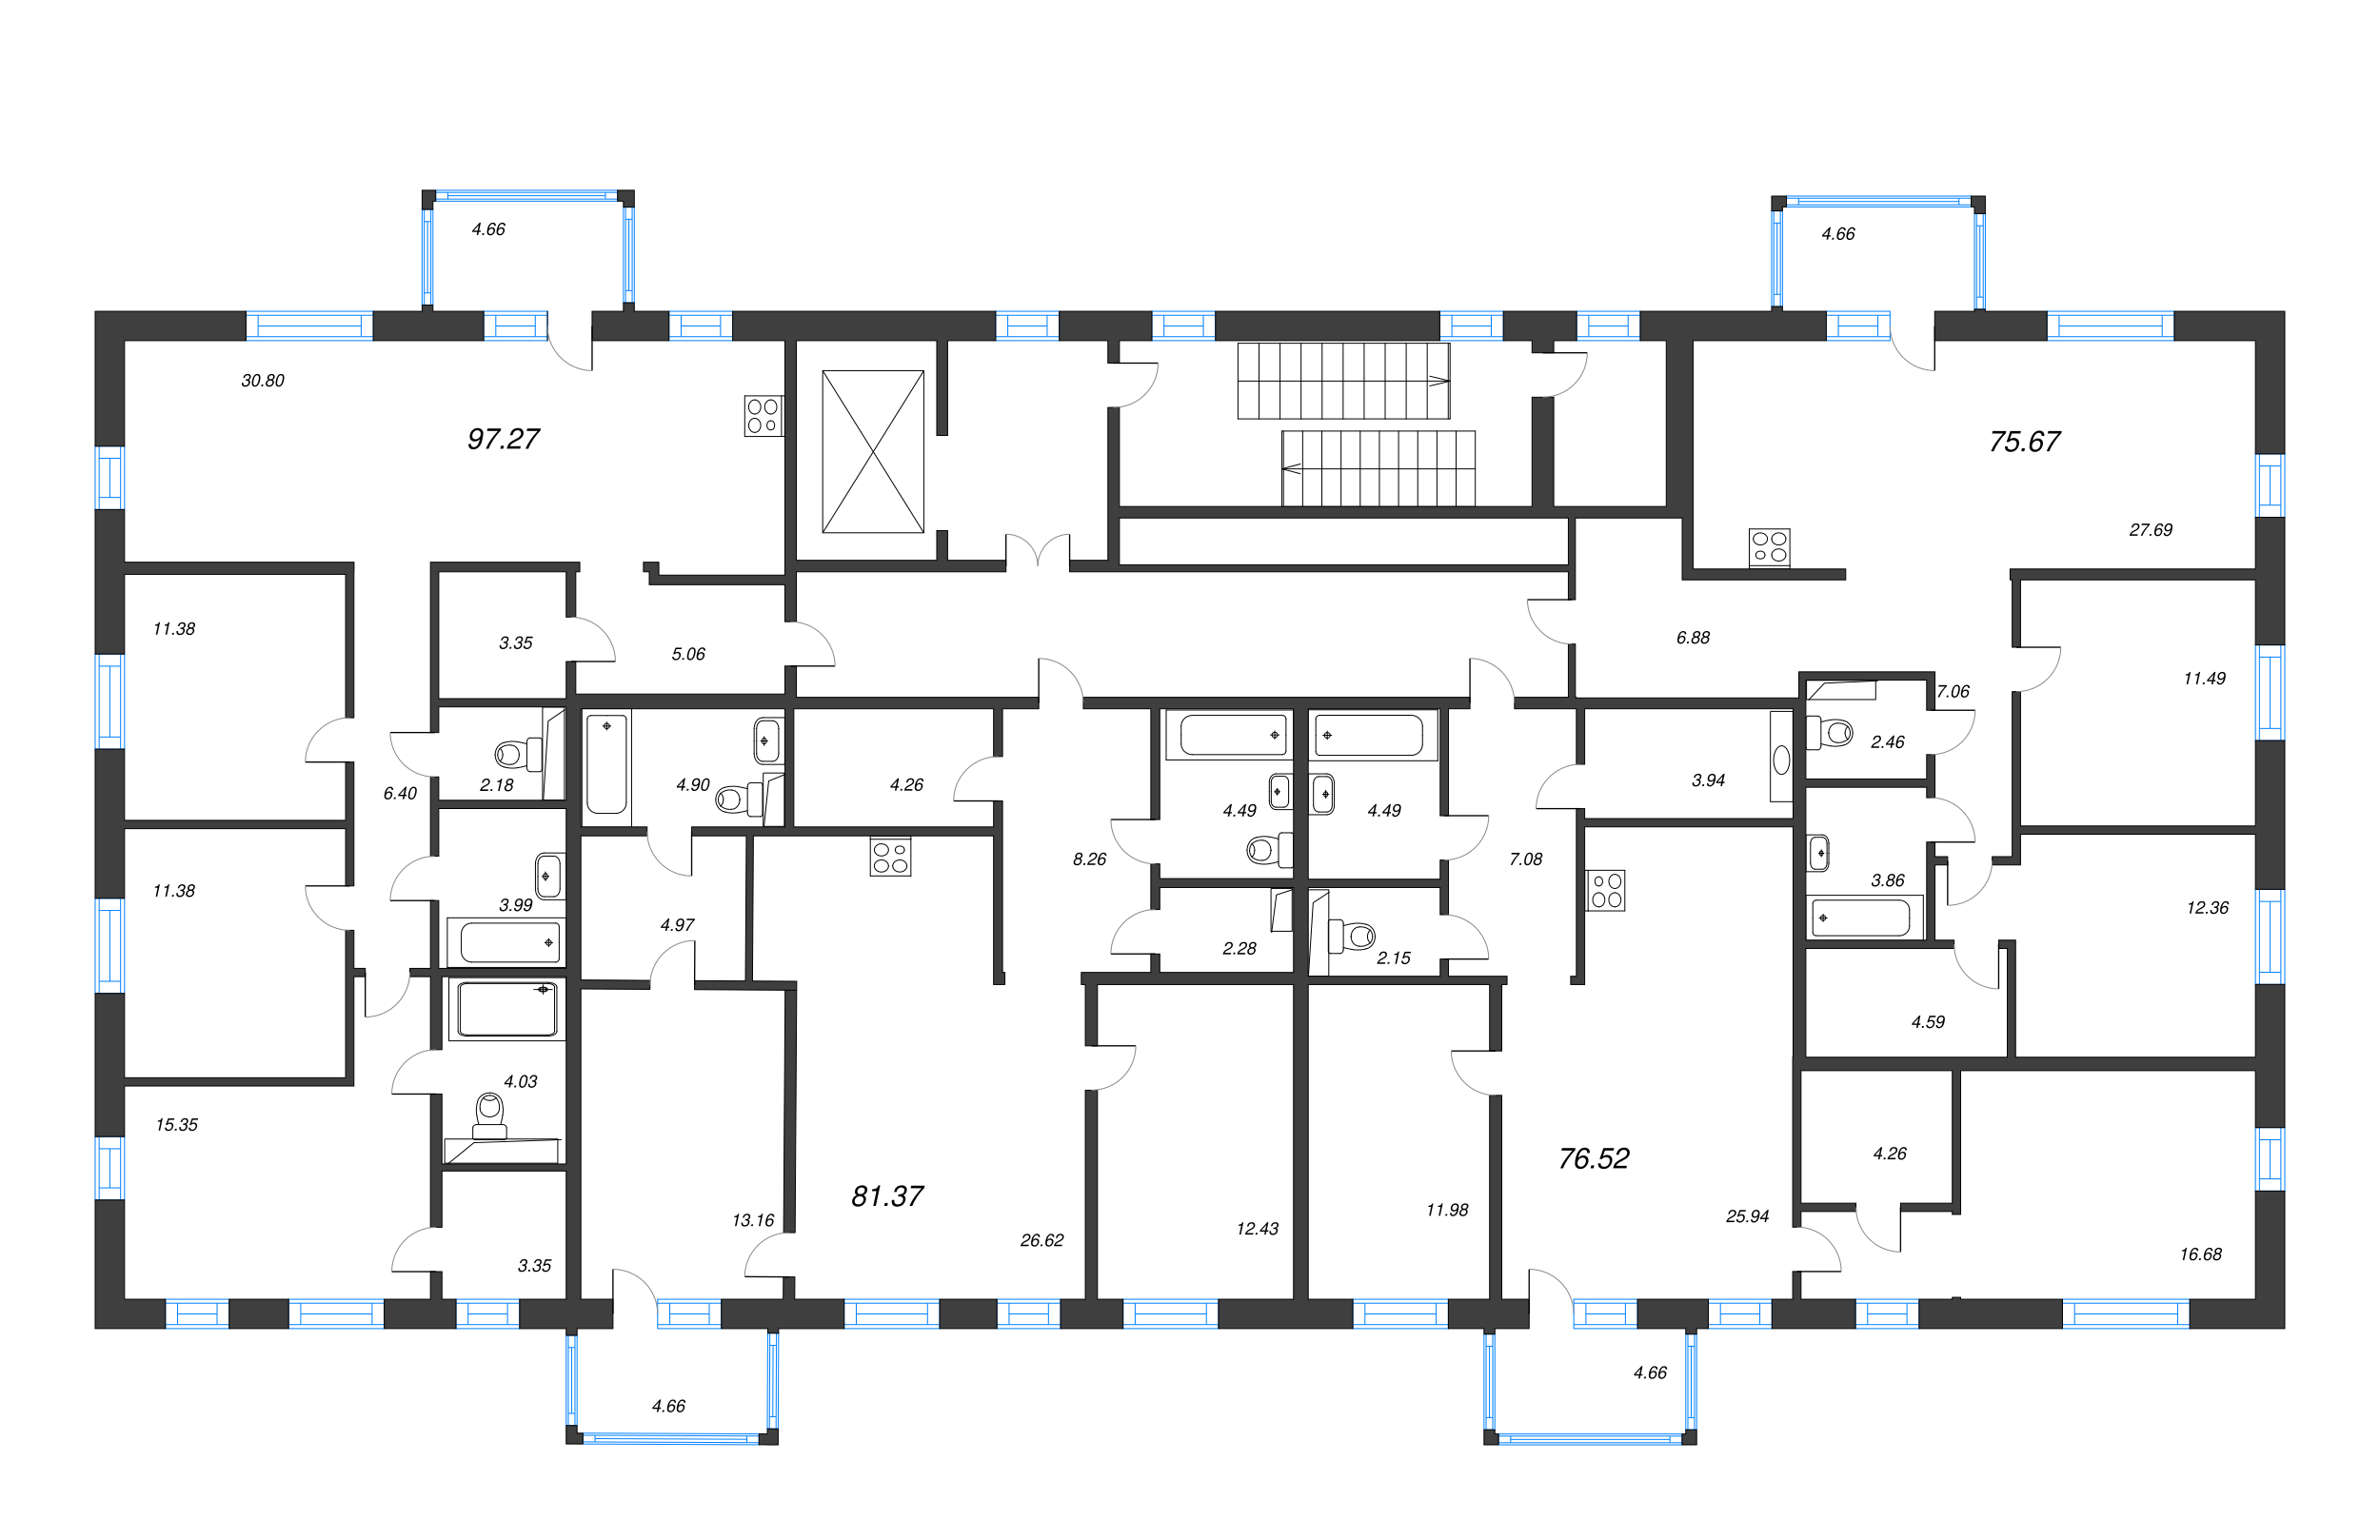 3-комнатная (Евро) квартира, 75.67 м² в ЖК "Черная речка, 41" - планировка этажа